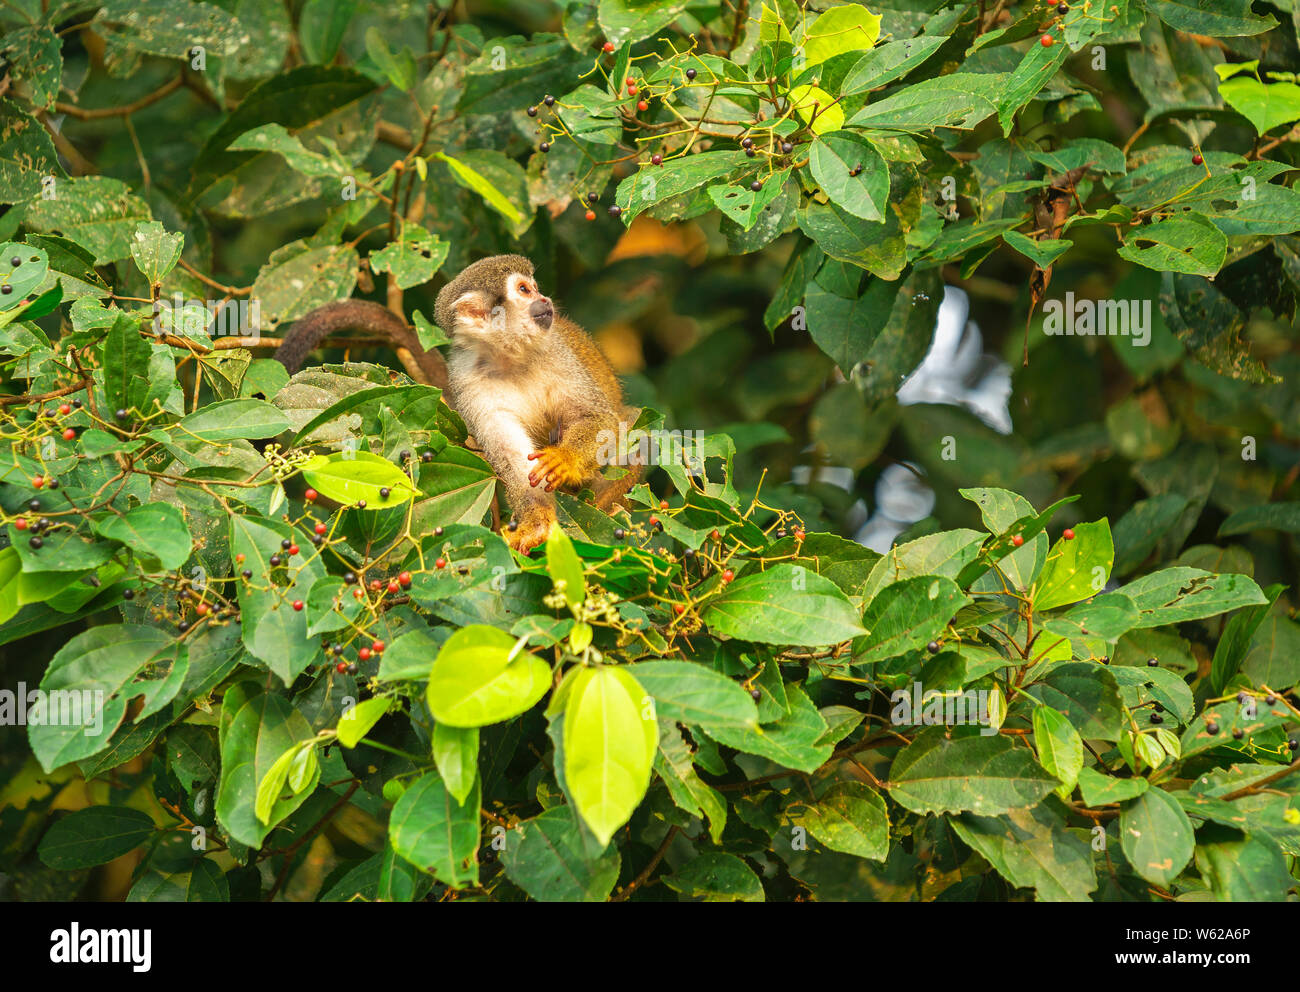 Un singe écureuil (Saimiri) manger des baies, parc national Yasuni, en Equateur. Ils sont trouvés dans la forêt amazonienne et la jungle d'Amérique centrale. Banque D'Images